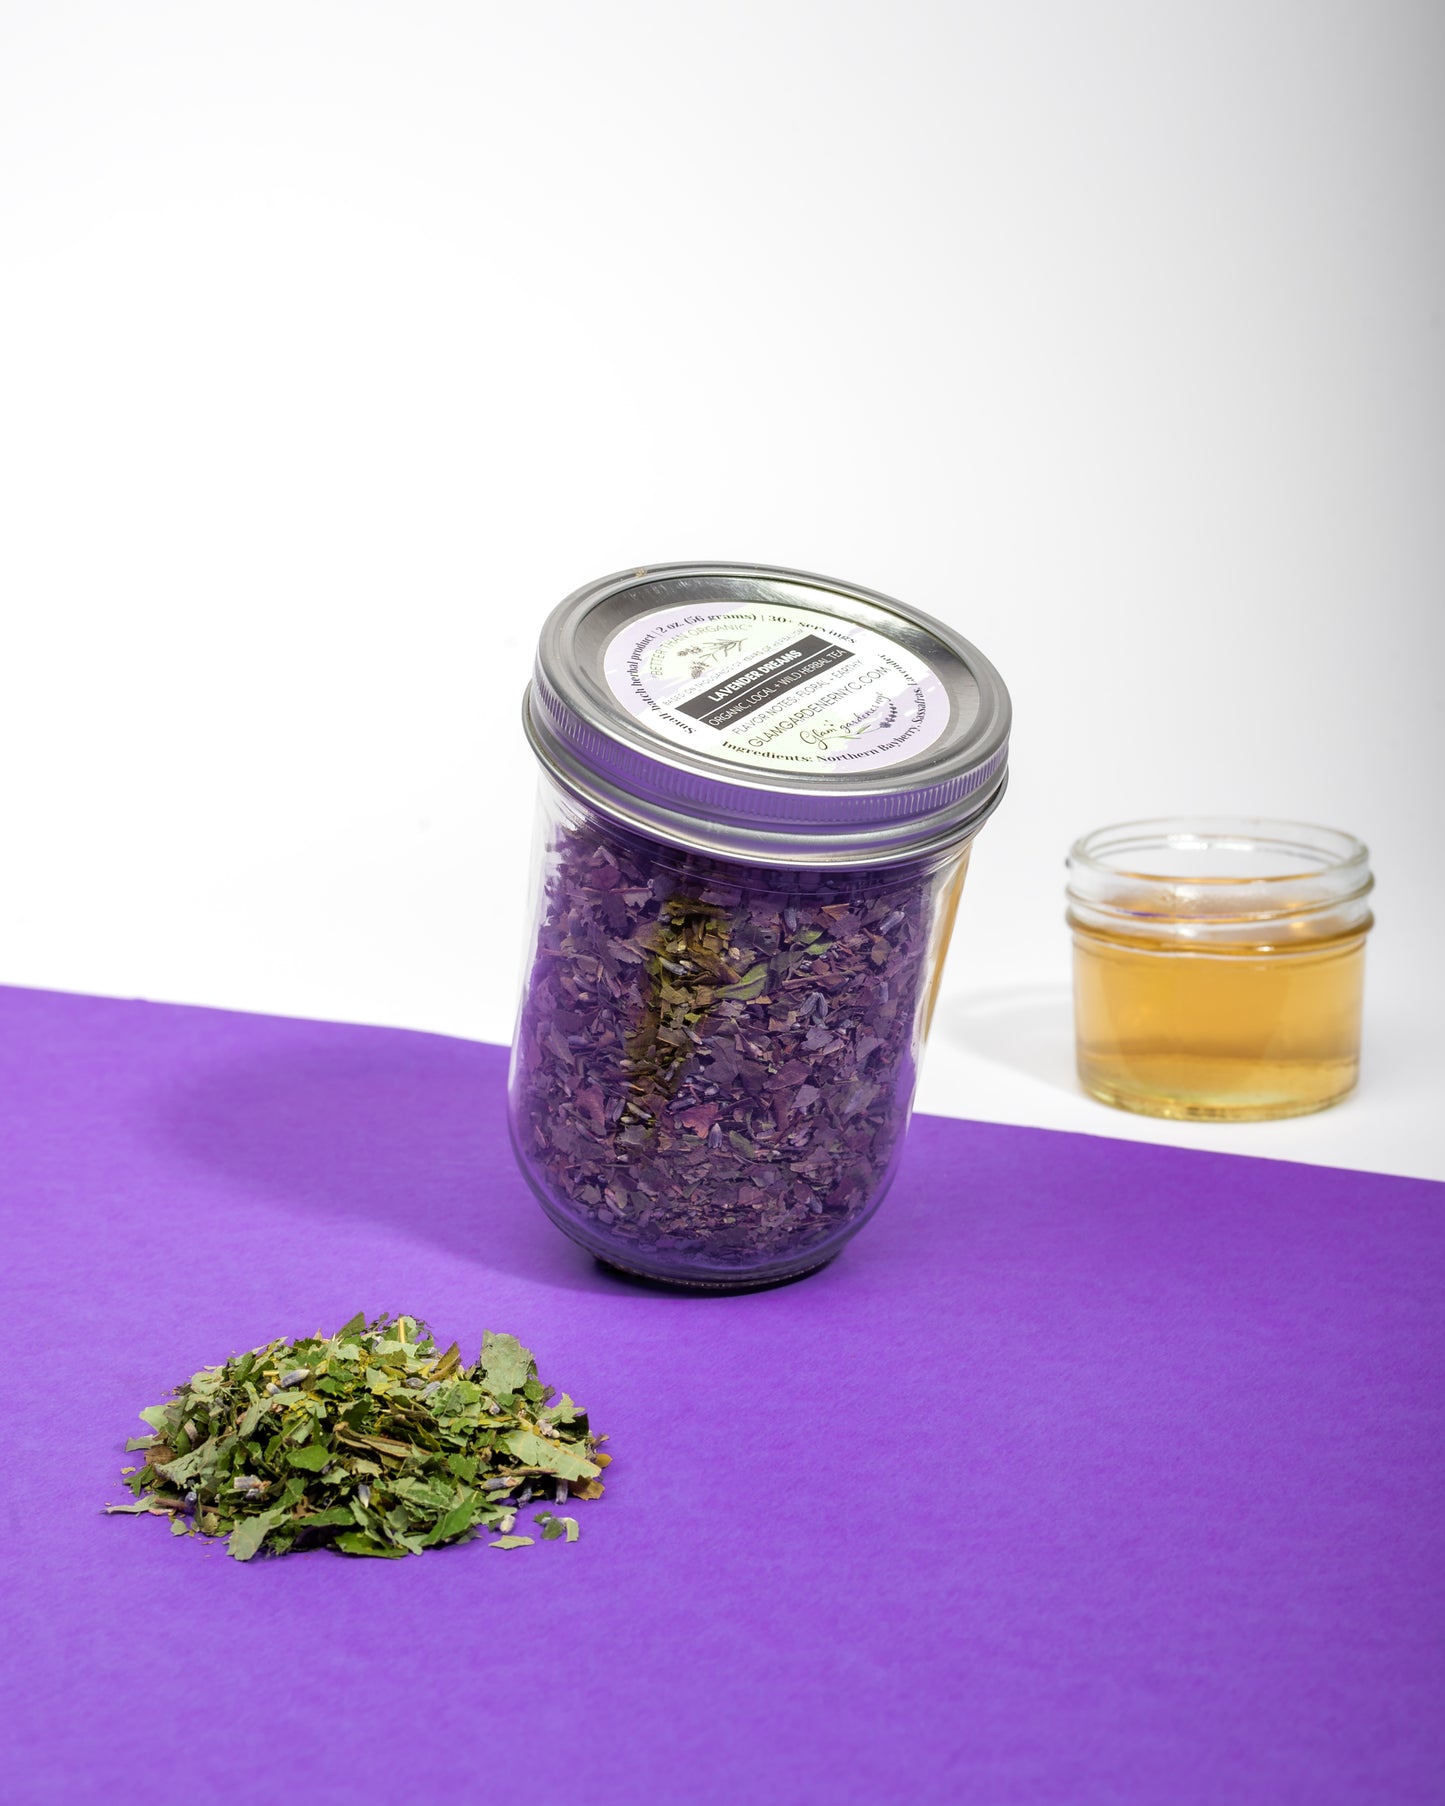 Lavender dreams loose leaf herbal tea (designed for rest)